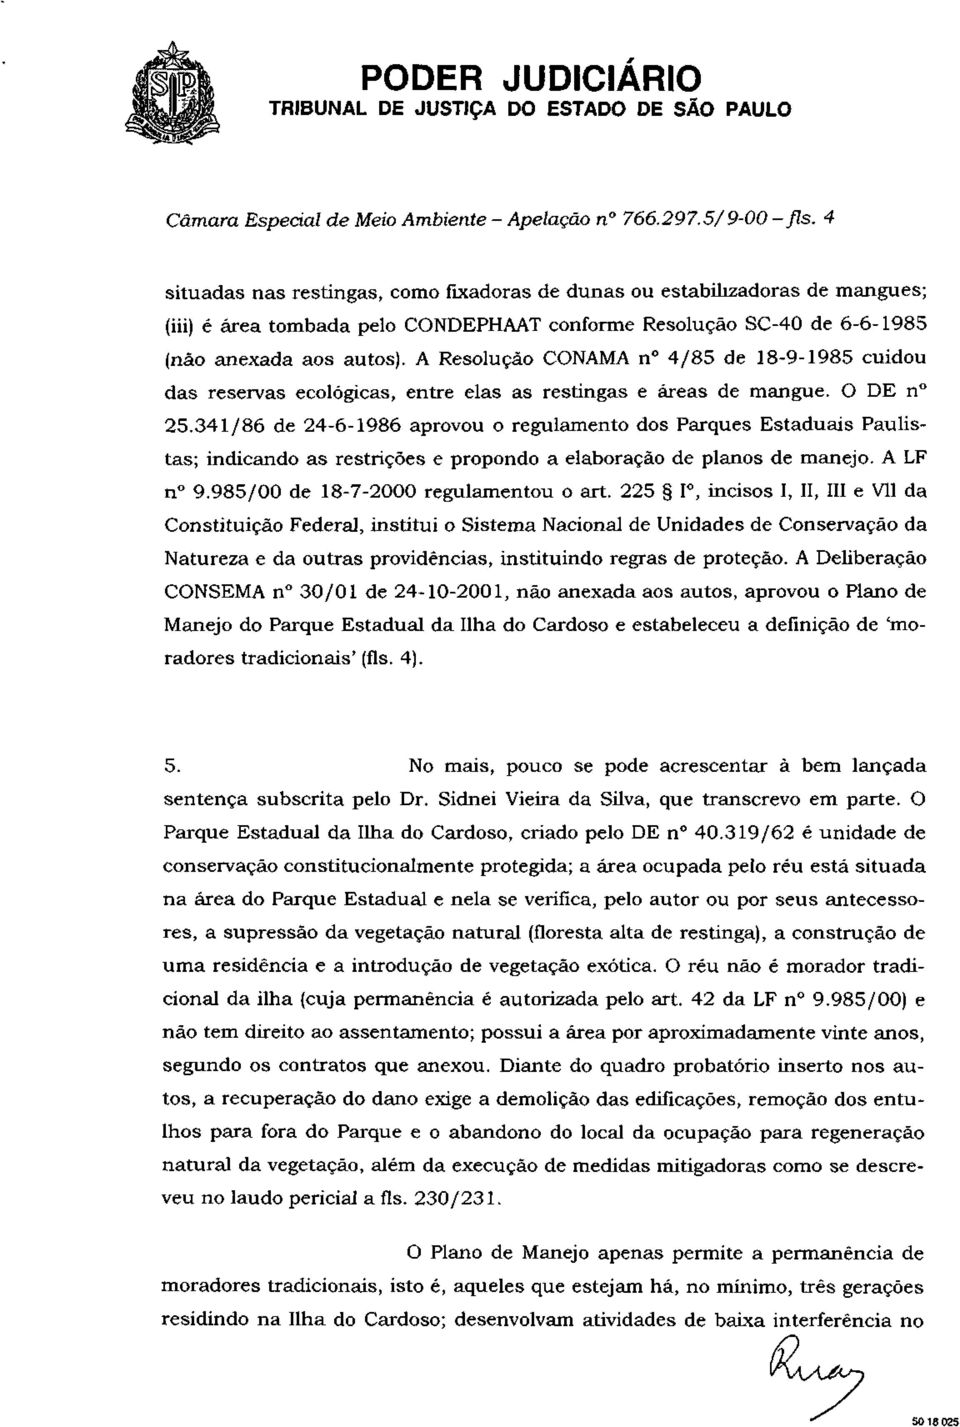 A Resolução CONAMA n 4/85 de 18-9-1985 cuidou das reservas ecológicas, entre elas as restingas e áreas de mangue. O DE n 25.